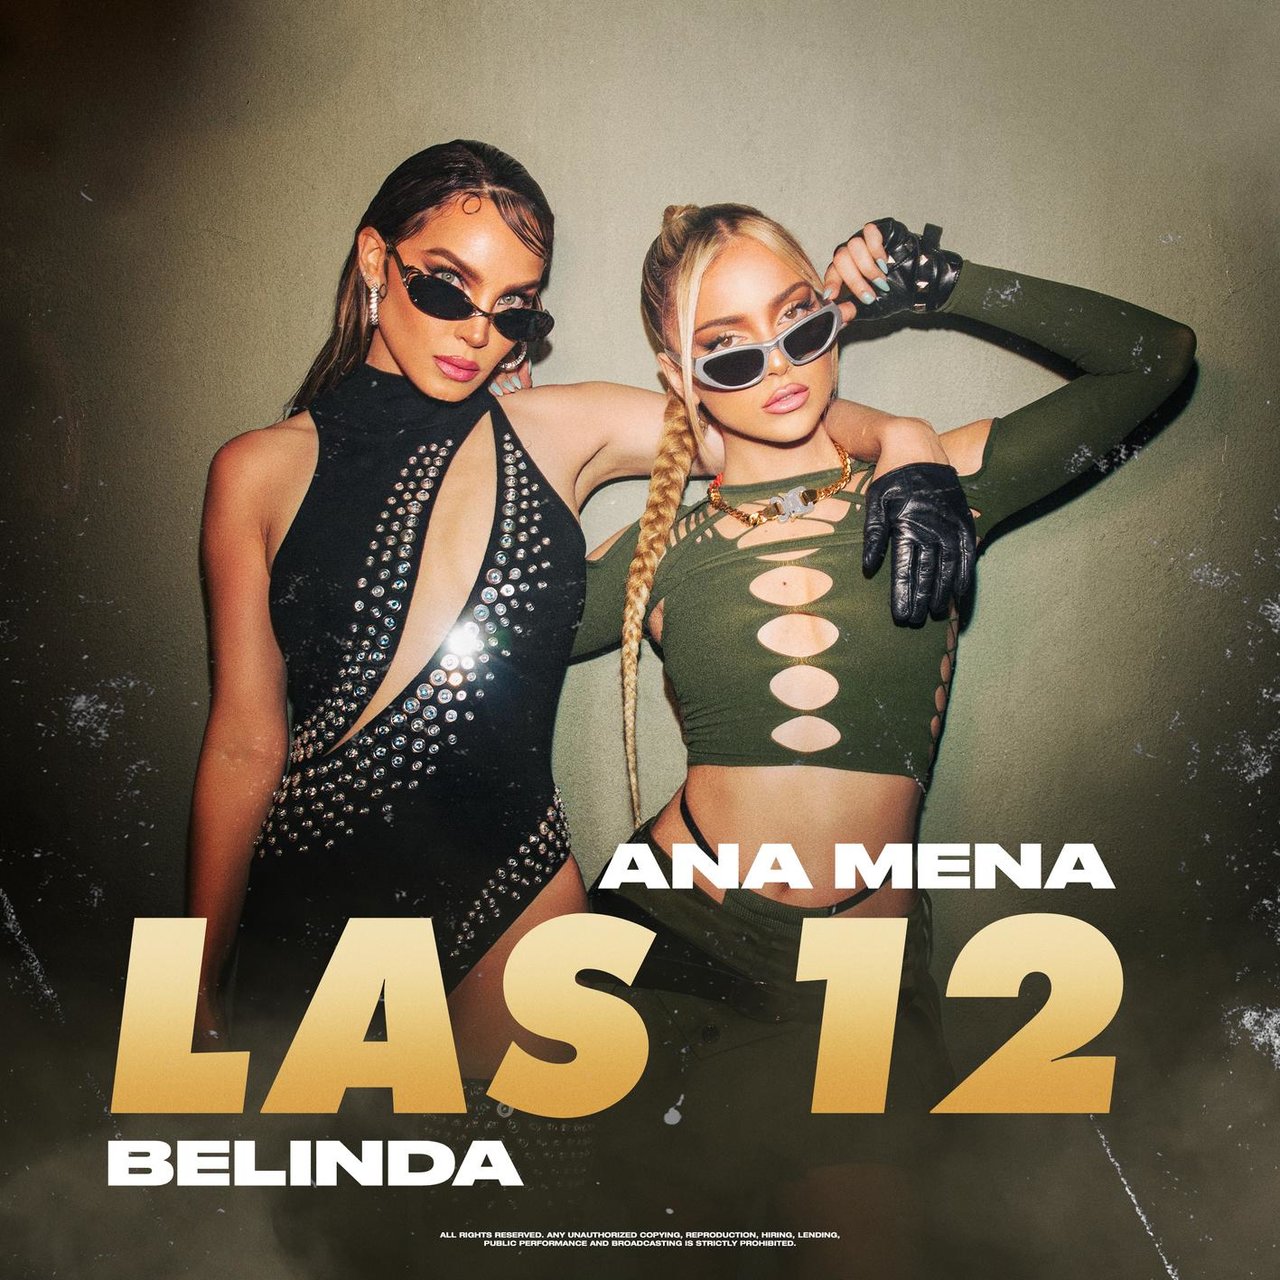 Ana Mena & Belinda — LAS 12 cover artwork